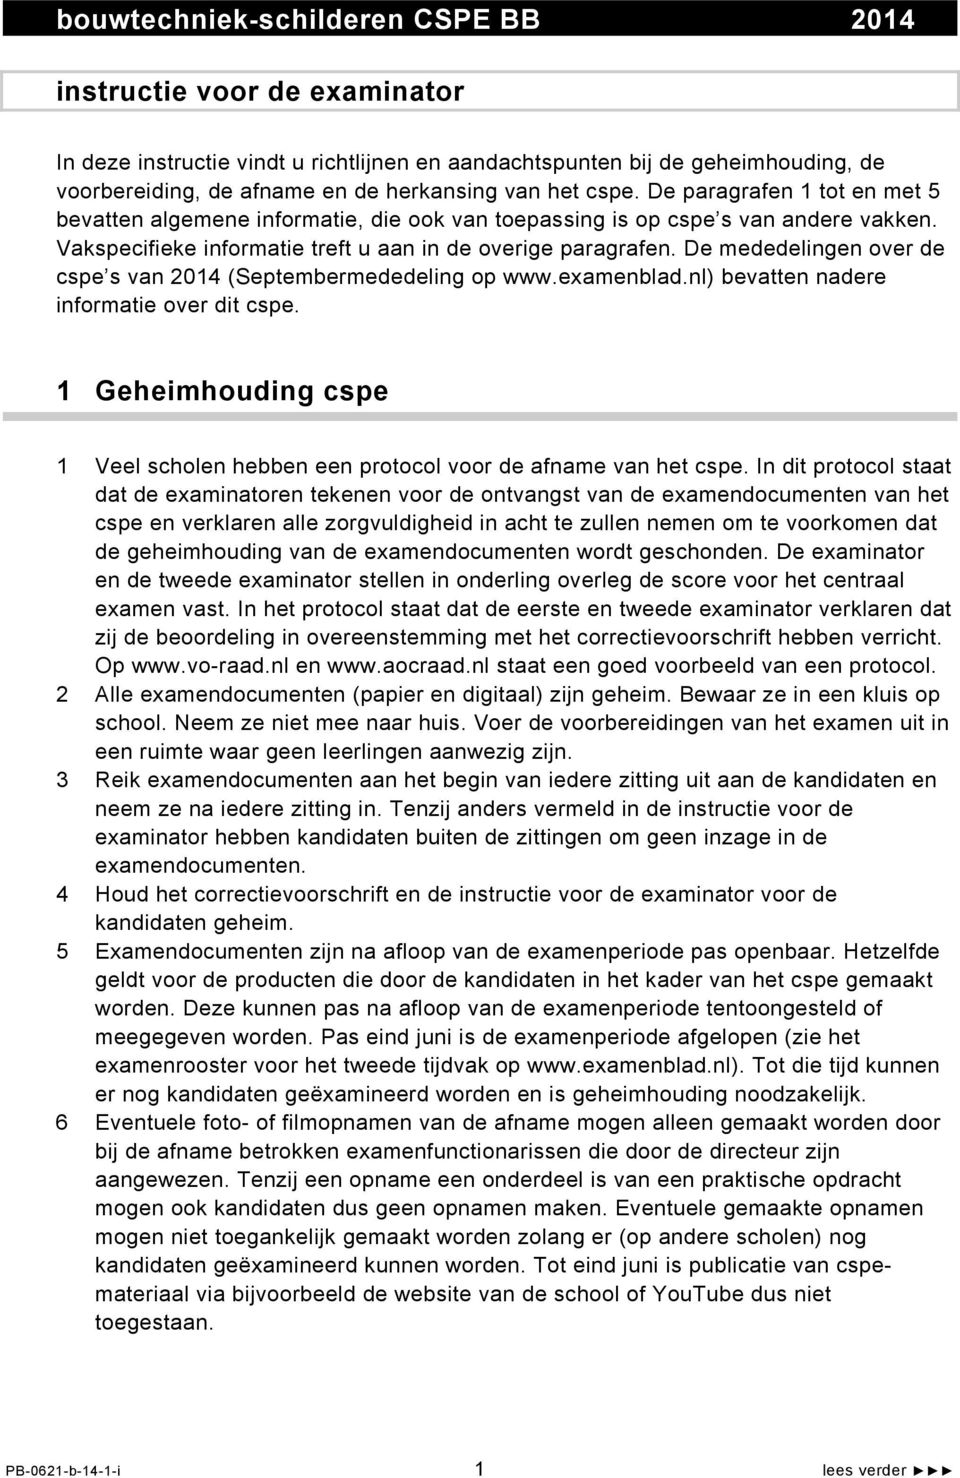 De mededelingen over de cspe s van 2014 (Septembermededeling op www.examenblad.nl) bevatten nadere informatie over dit cspe.